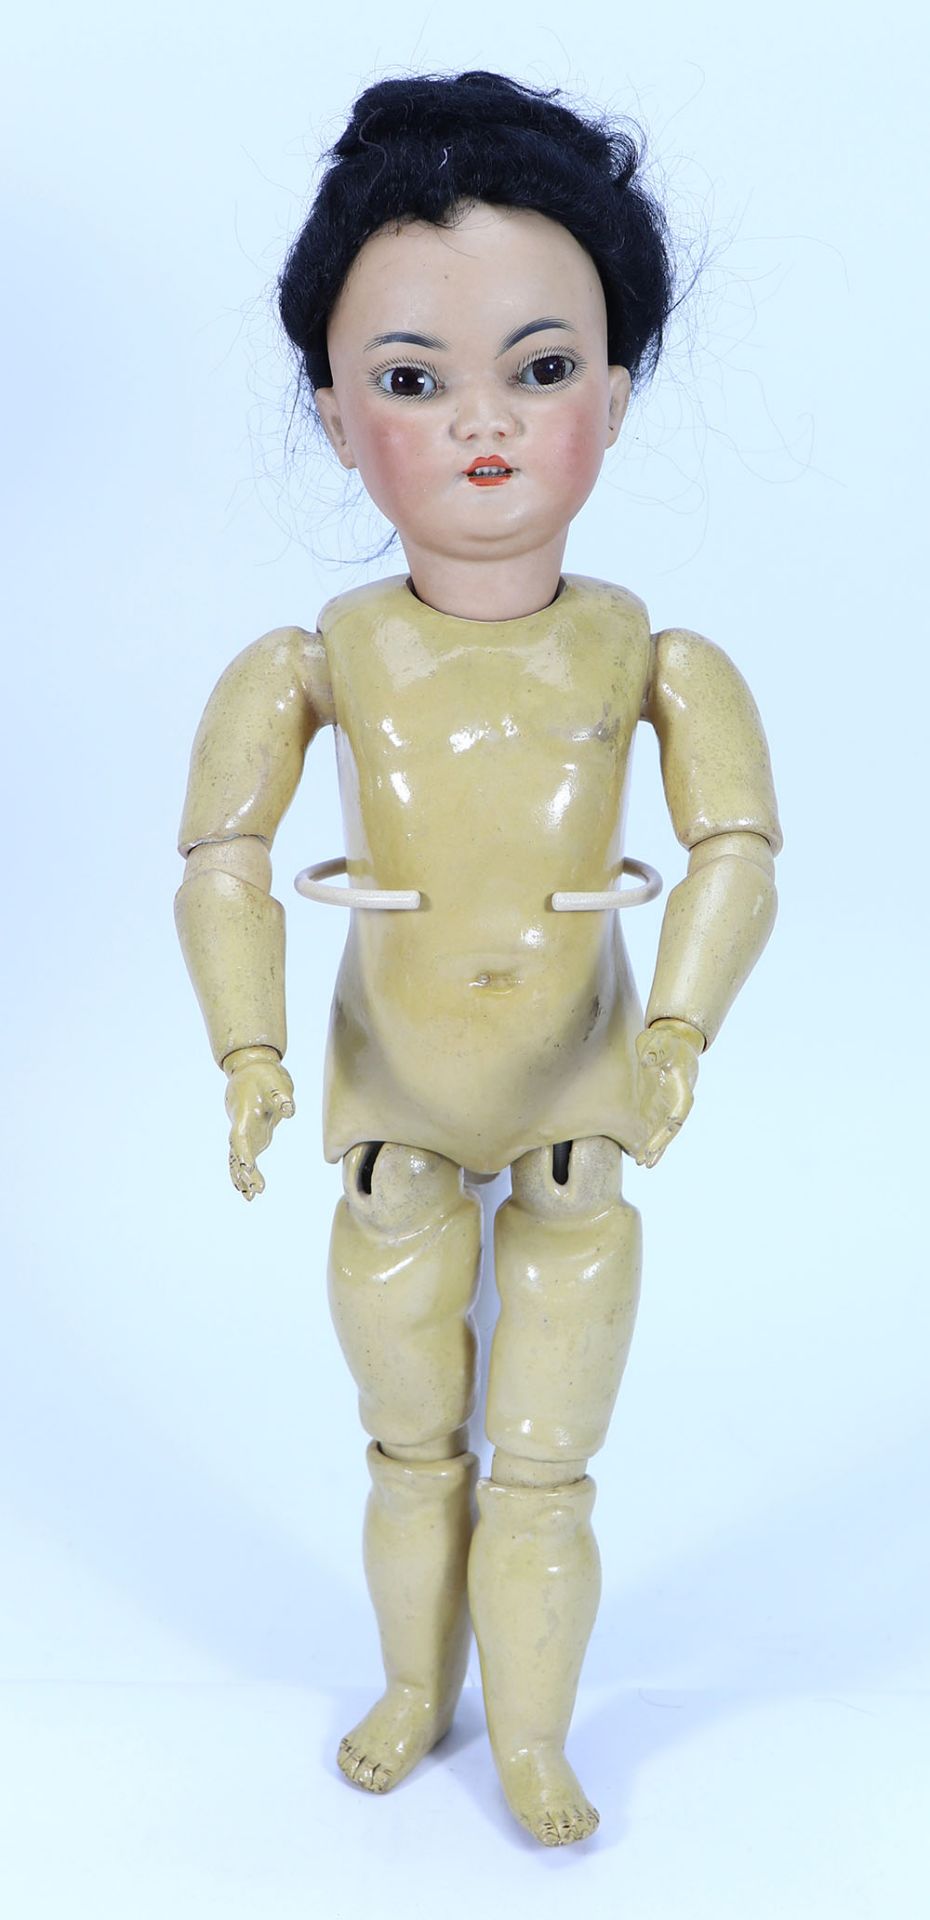 A Simon & Halbig 1199 bisque head Asian doll, German circa 1910,